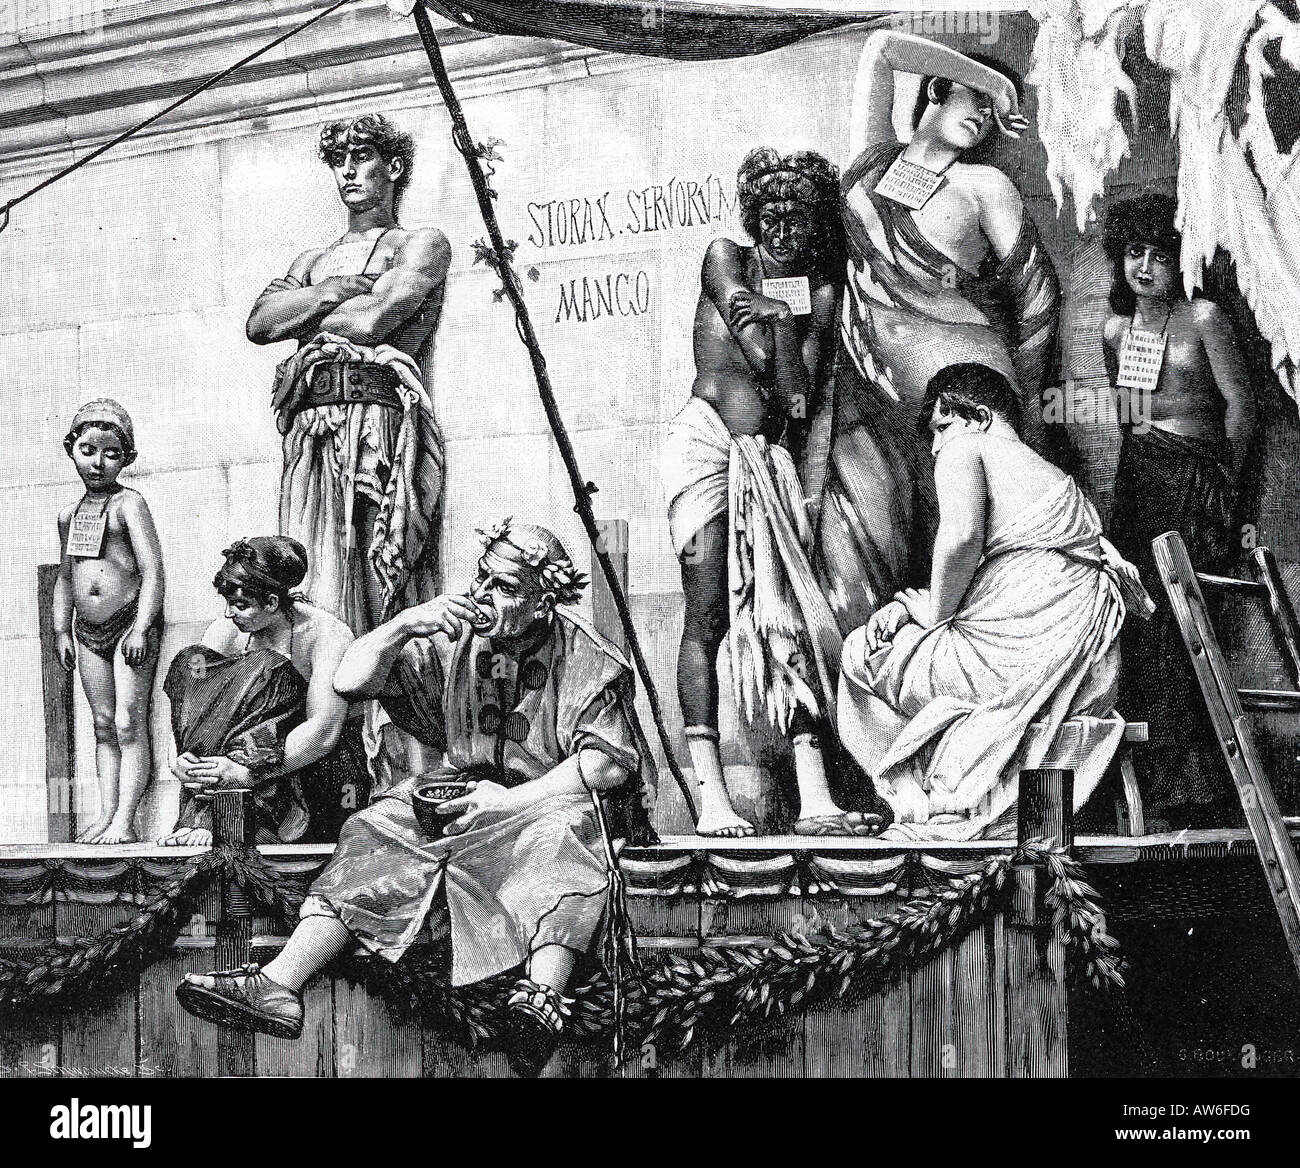 RÖMISCHEN SKLAVENMARKT wie in einem 19. Jahrhundert Gravur dargestellt mit jeder Slave eine kurze Geschichte und Preis um den Hals Stockfoto